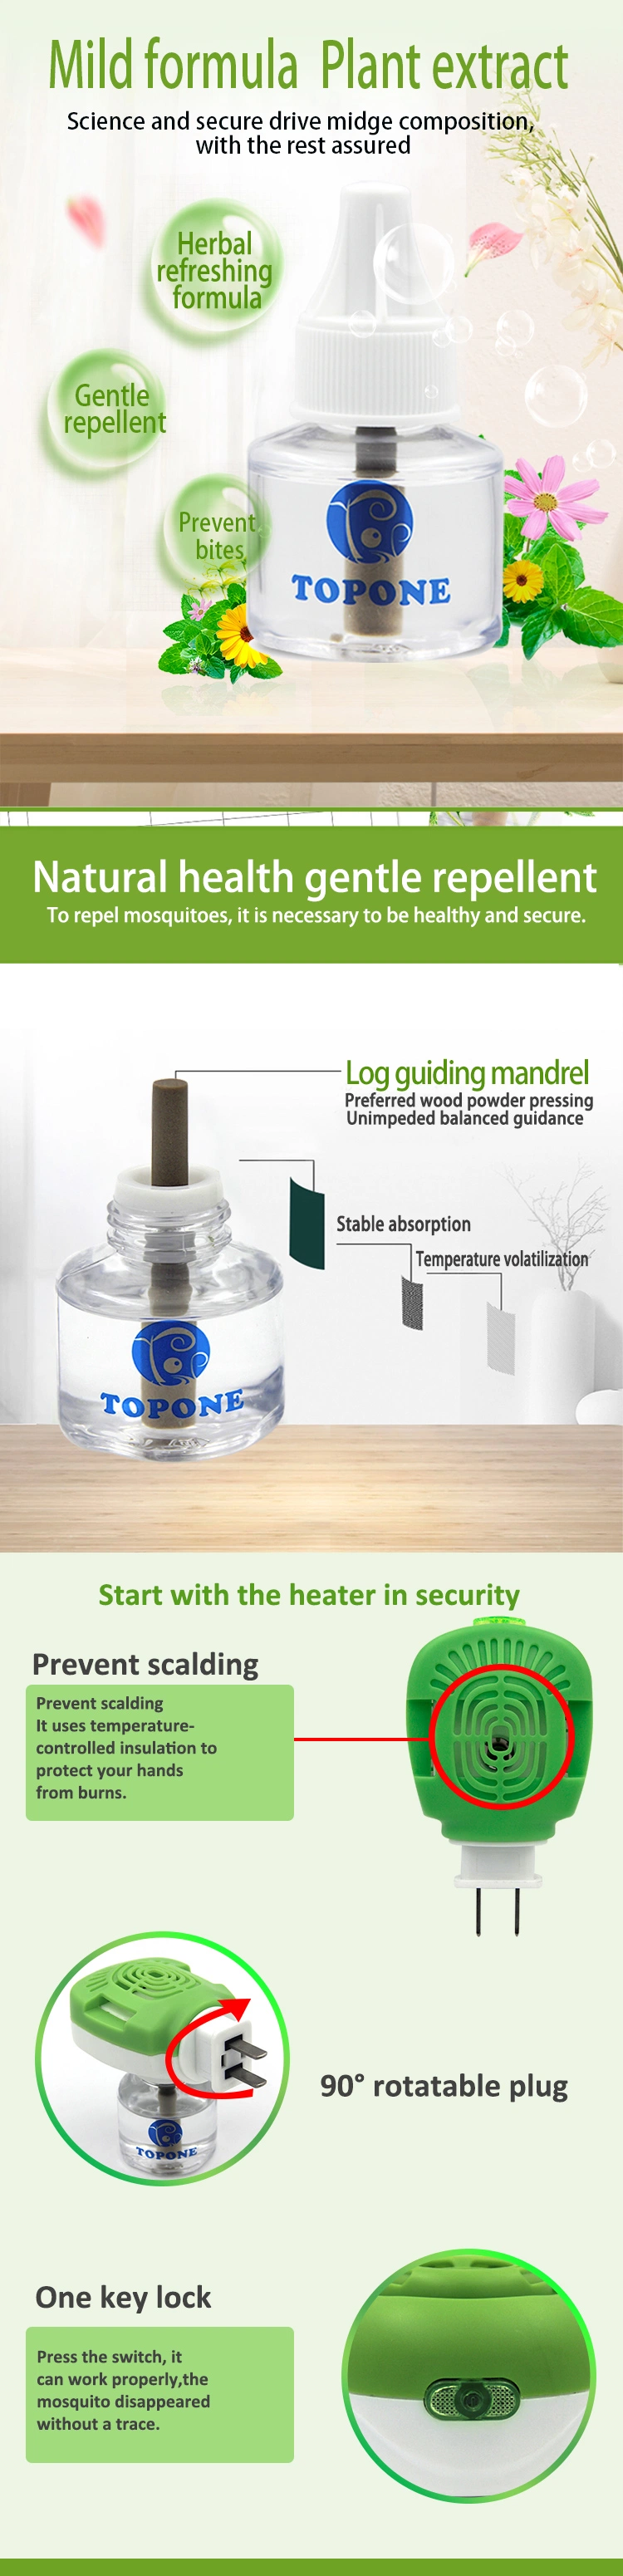 Topone OEM Pesticide 45ml Chemical Electrical Mosquito Repellent Liquid